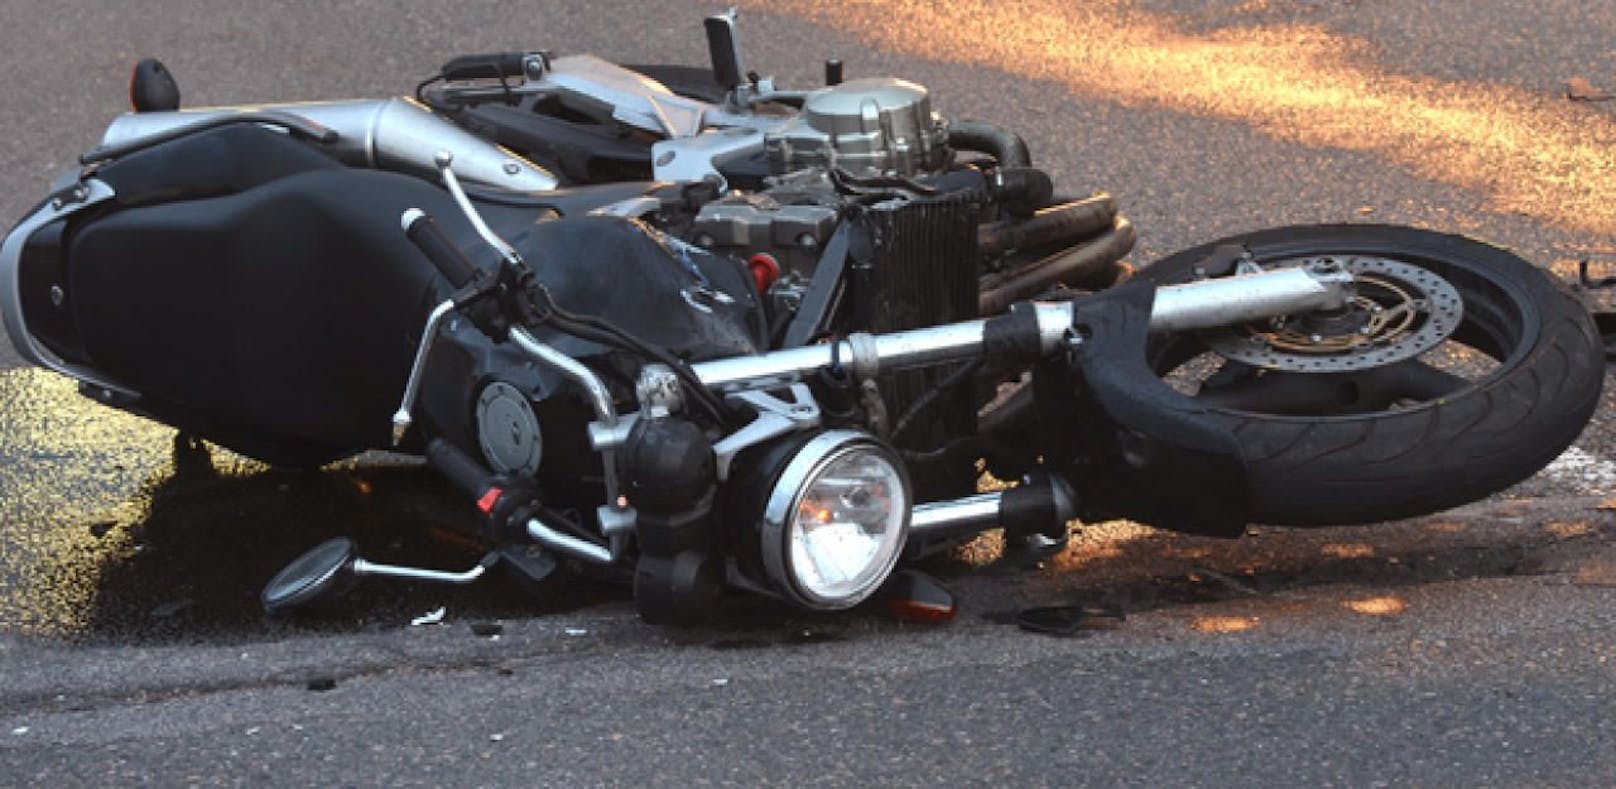 Motorradfahrerin kollidiert mit Pkw und stirbt